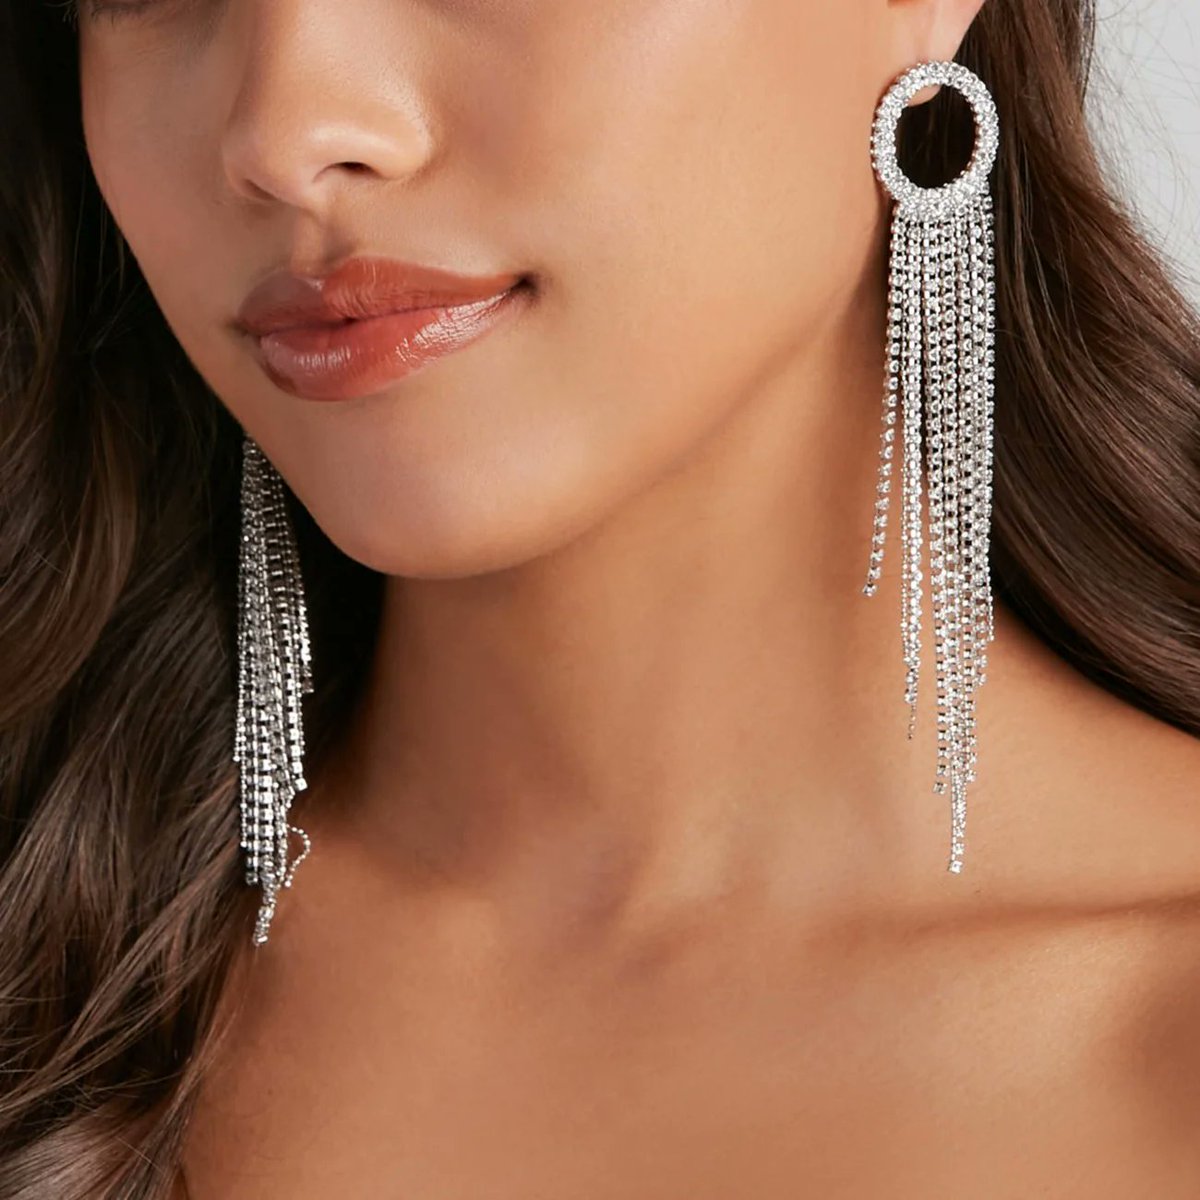 Iced Out Evening Prom Rhinestone Earrings
Buy Now >>> tinyurl.com/4cje2bjb
#earrings #icedoutearrings #earringsforwomen